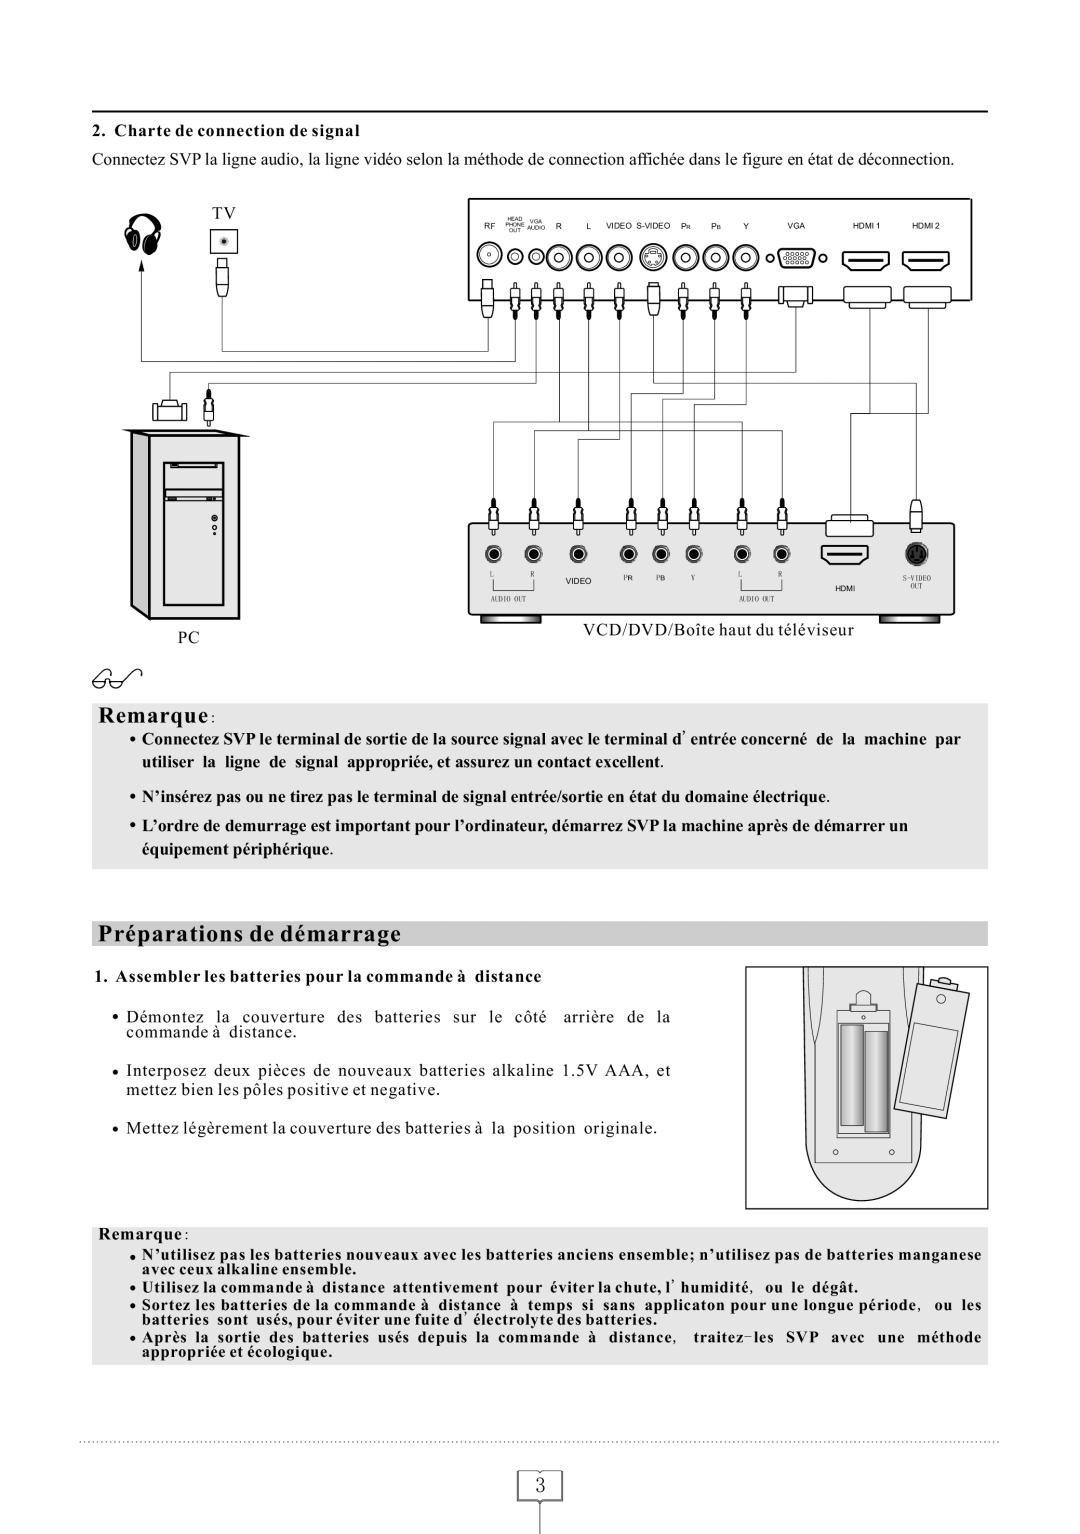 Curtis LCDVD152 manual Préparations de démarrage, Remarque, Charte de connection de signal 